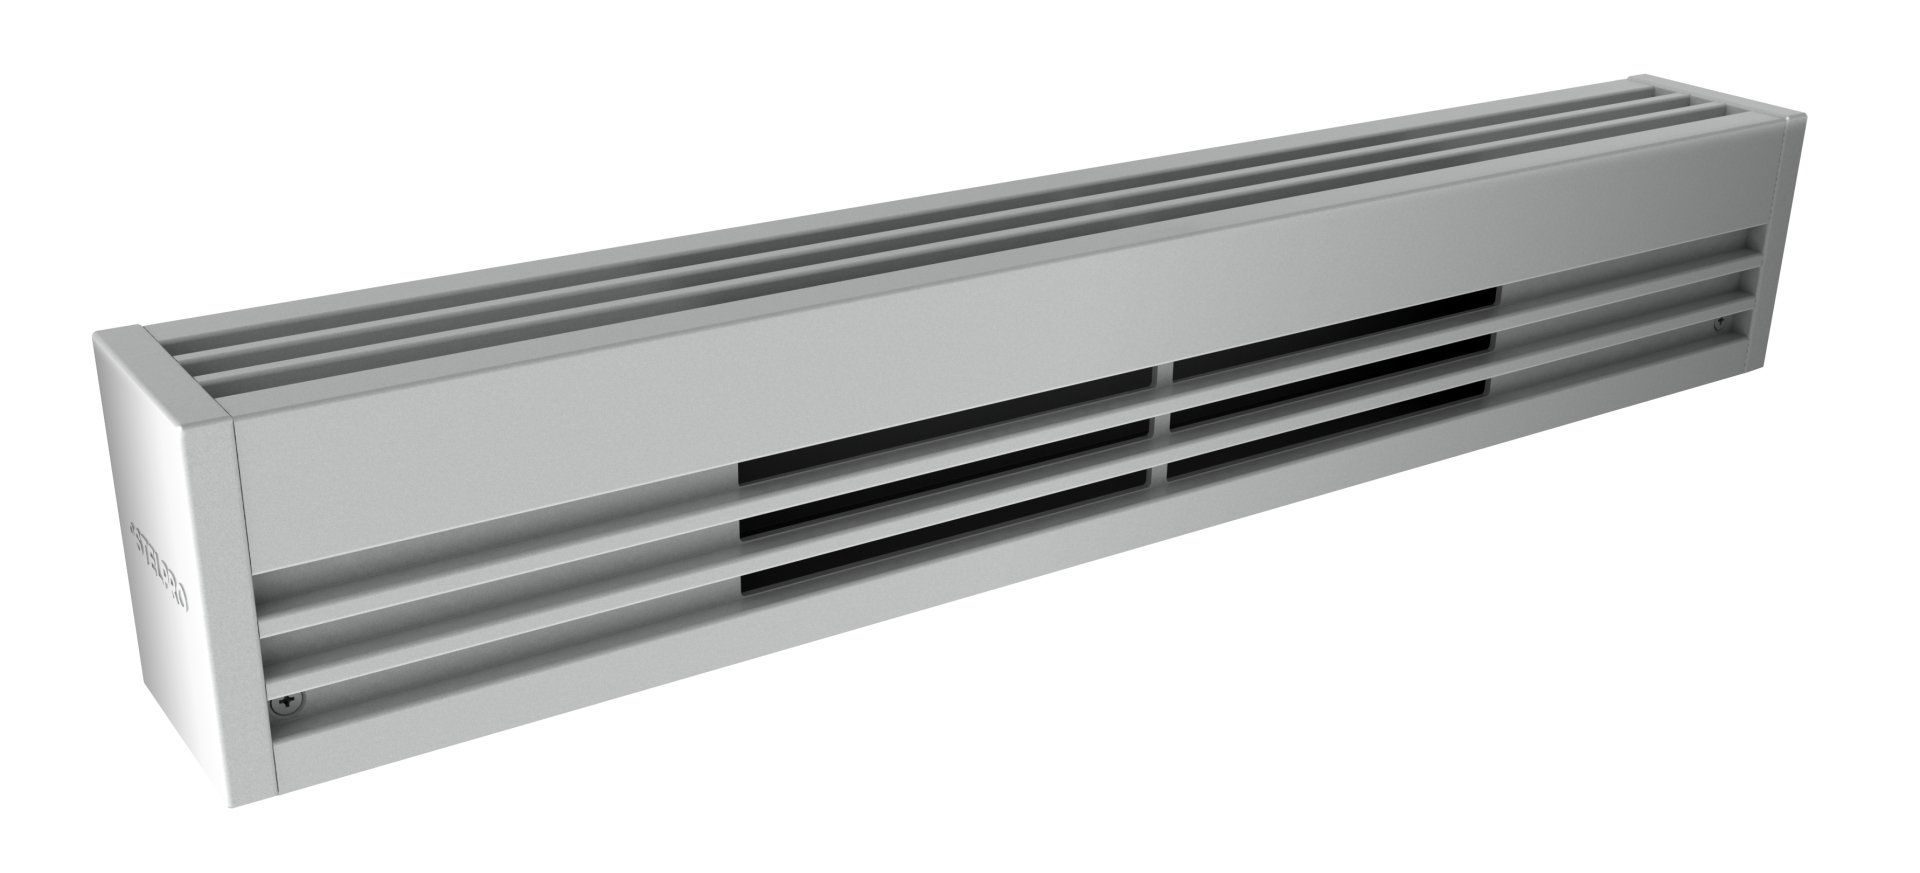 Stelpro Heaters - Alux 3 Baseboard heater